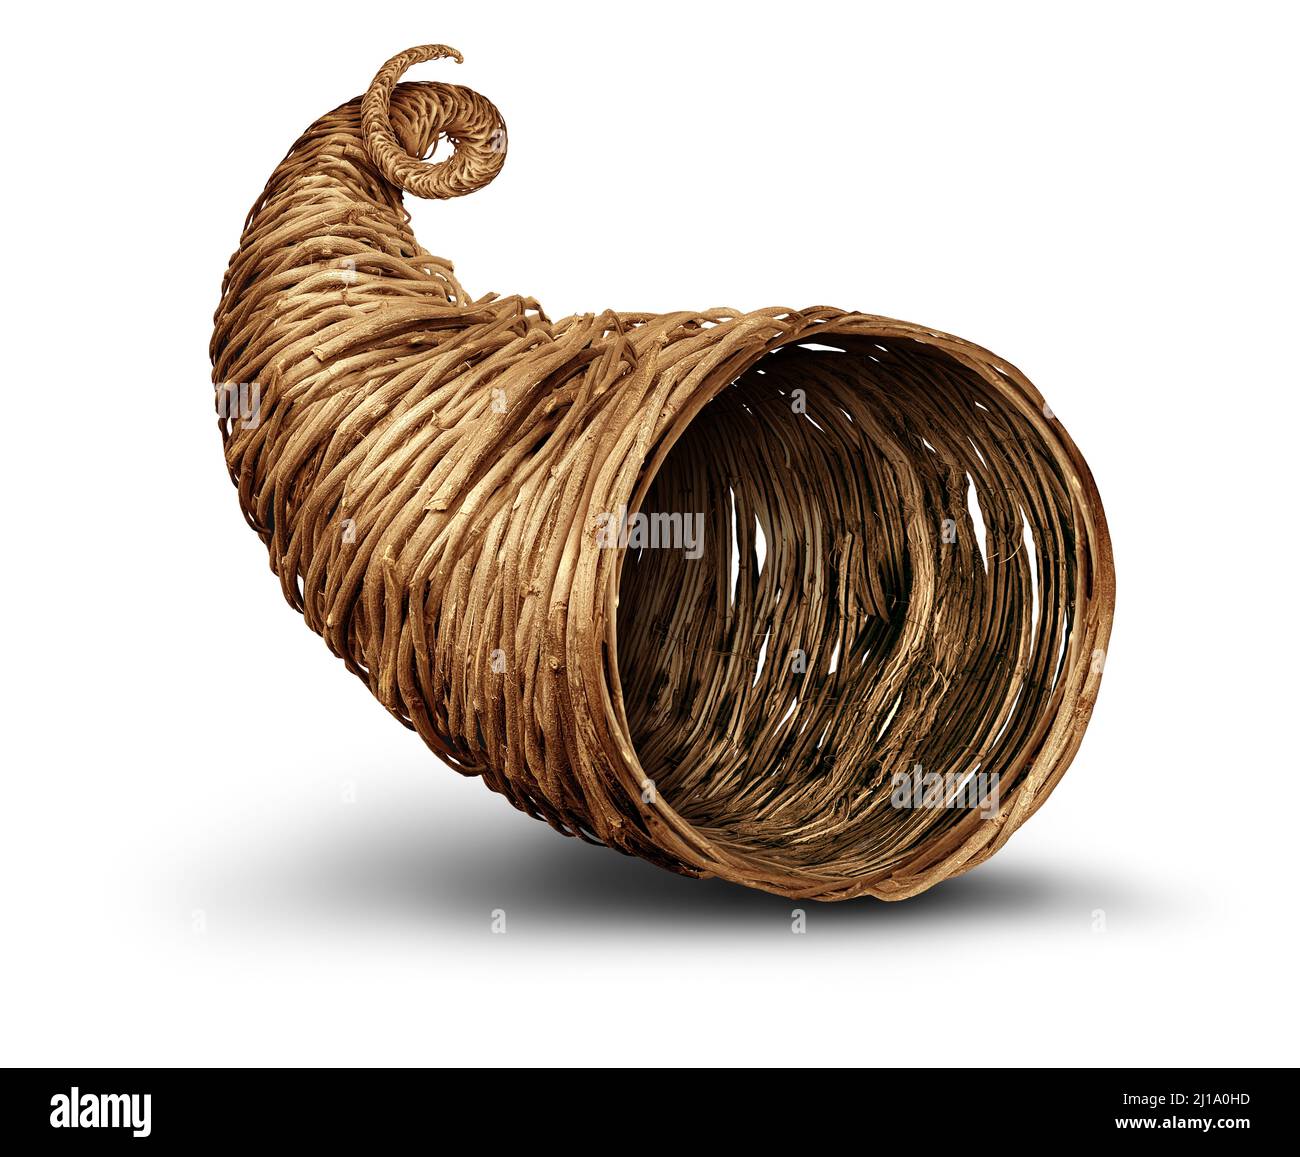 Cornucopia Horn Objekt auf weißem Hintergrund als leere rustikale traditionelle hohle Weide oder gewebt Korb. Stockfoto